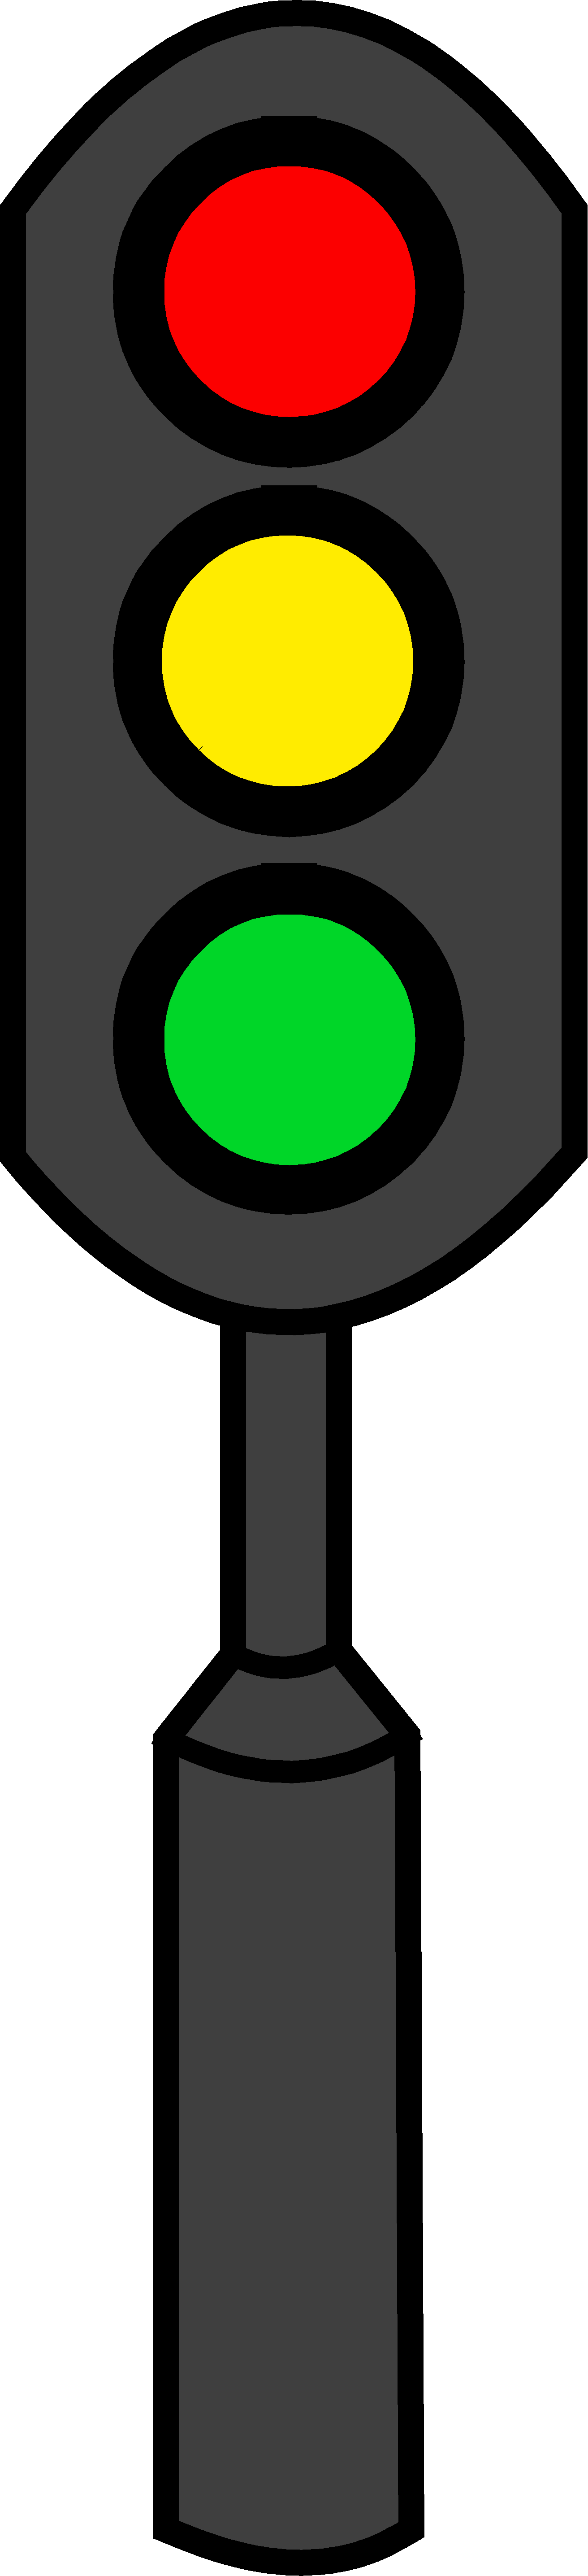 Traffic Light Clip Art - Free Clip Art